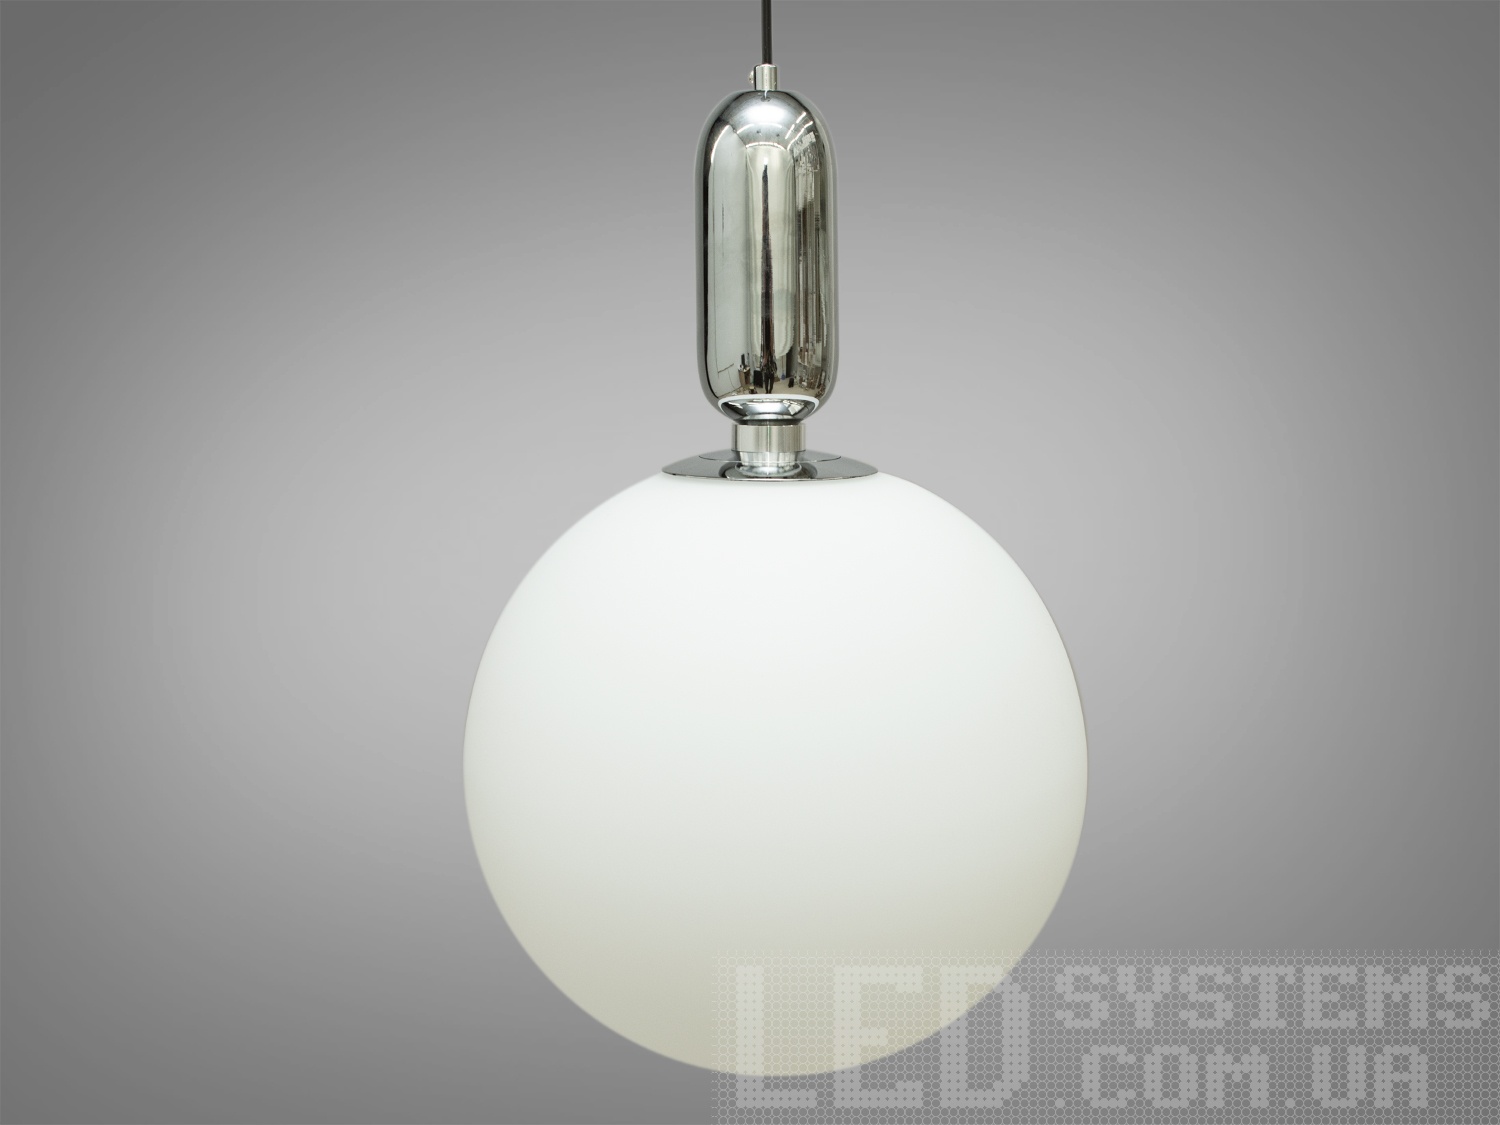 Стильний світильник-підвіс у стилі Loft у спальню міцно входять у наш побут, створюють затишне освітлення, перетворюють та доповнюють найвишуканіший сучасний інтер'єр.Довжина підвісів регулюється стандартними затискачами для світильників-підвісів.
Світильник-підвіс під звичайні лампочки розжарювання, економки або світлодіодні лампи з цоколем Е27. Підвісні світильники в стилі «лофт» ідеально впишуться в сучасні будинки, квартири, кафе, арт-простір, коворкінги, квеструми. Матові скляні плафони ідеально розсіяють світло від лампи будь-якого типу. Кріпиться до навісних, натяжних і звичайних стель.